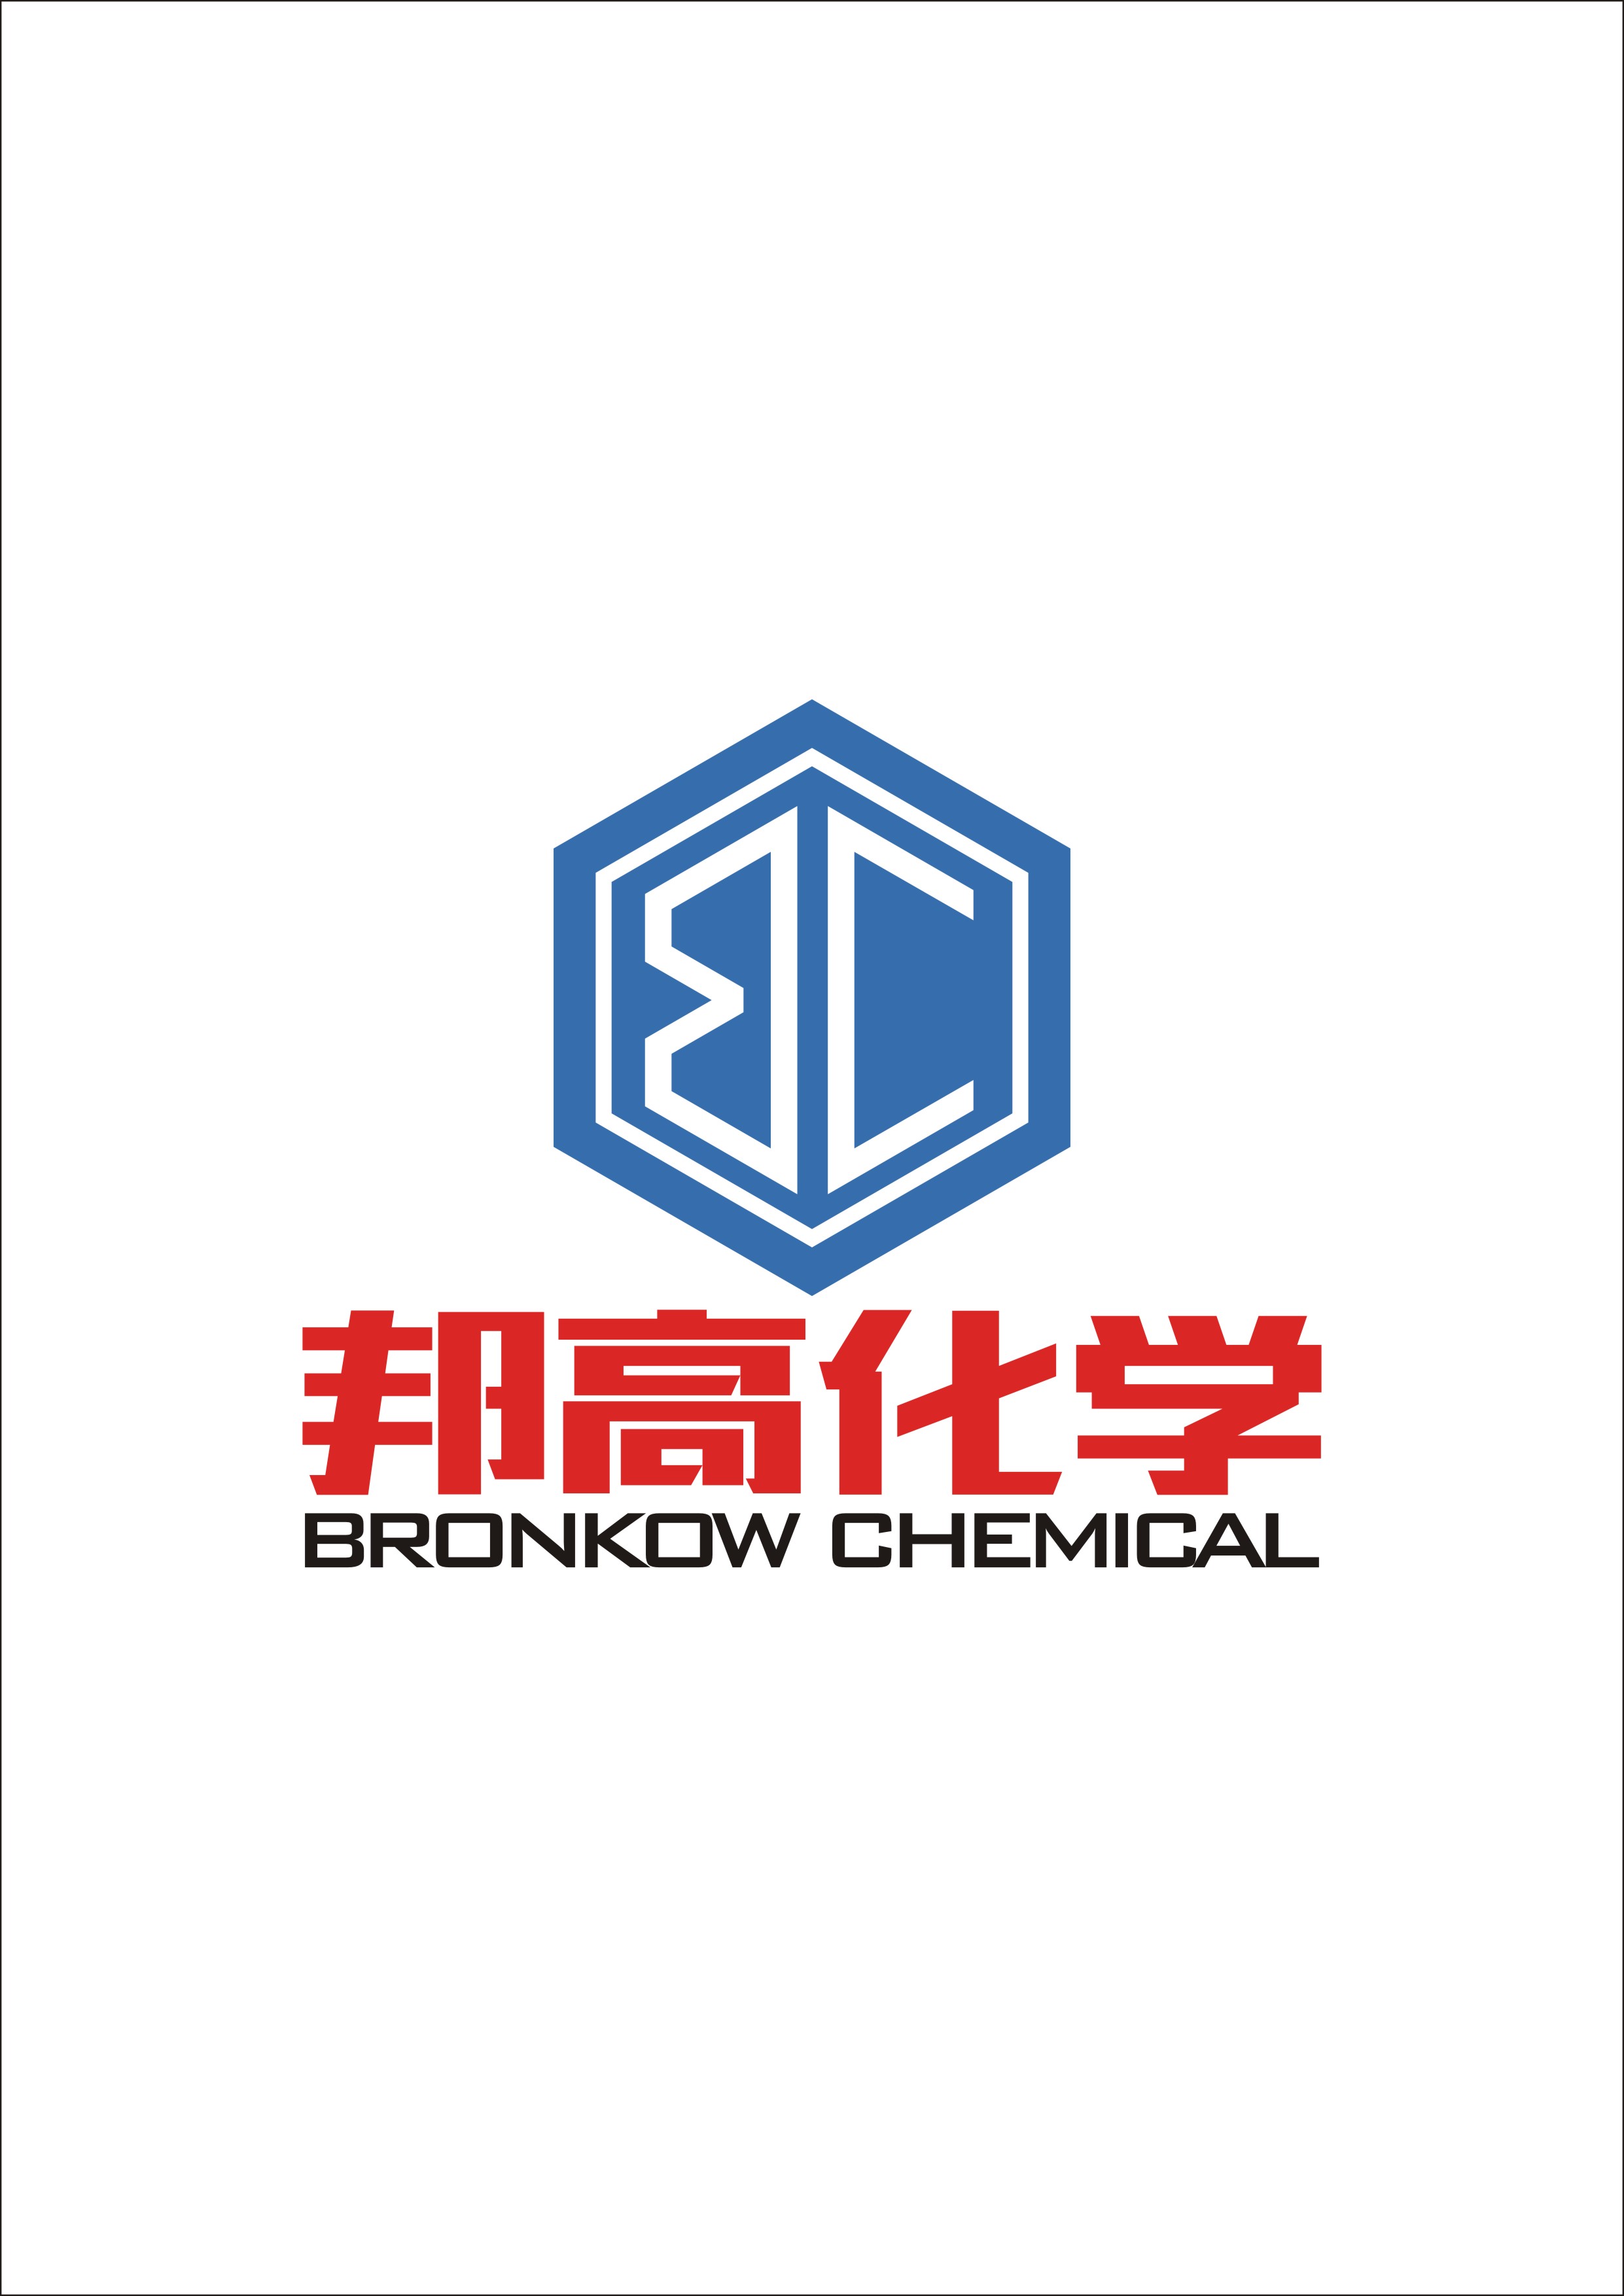 Shanghai Bronkow Chemical Co., Ltd._logo